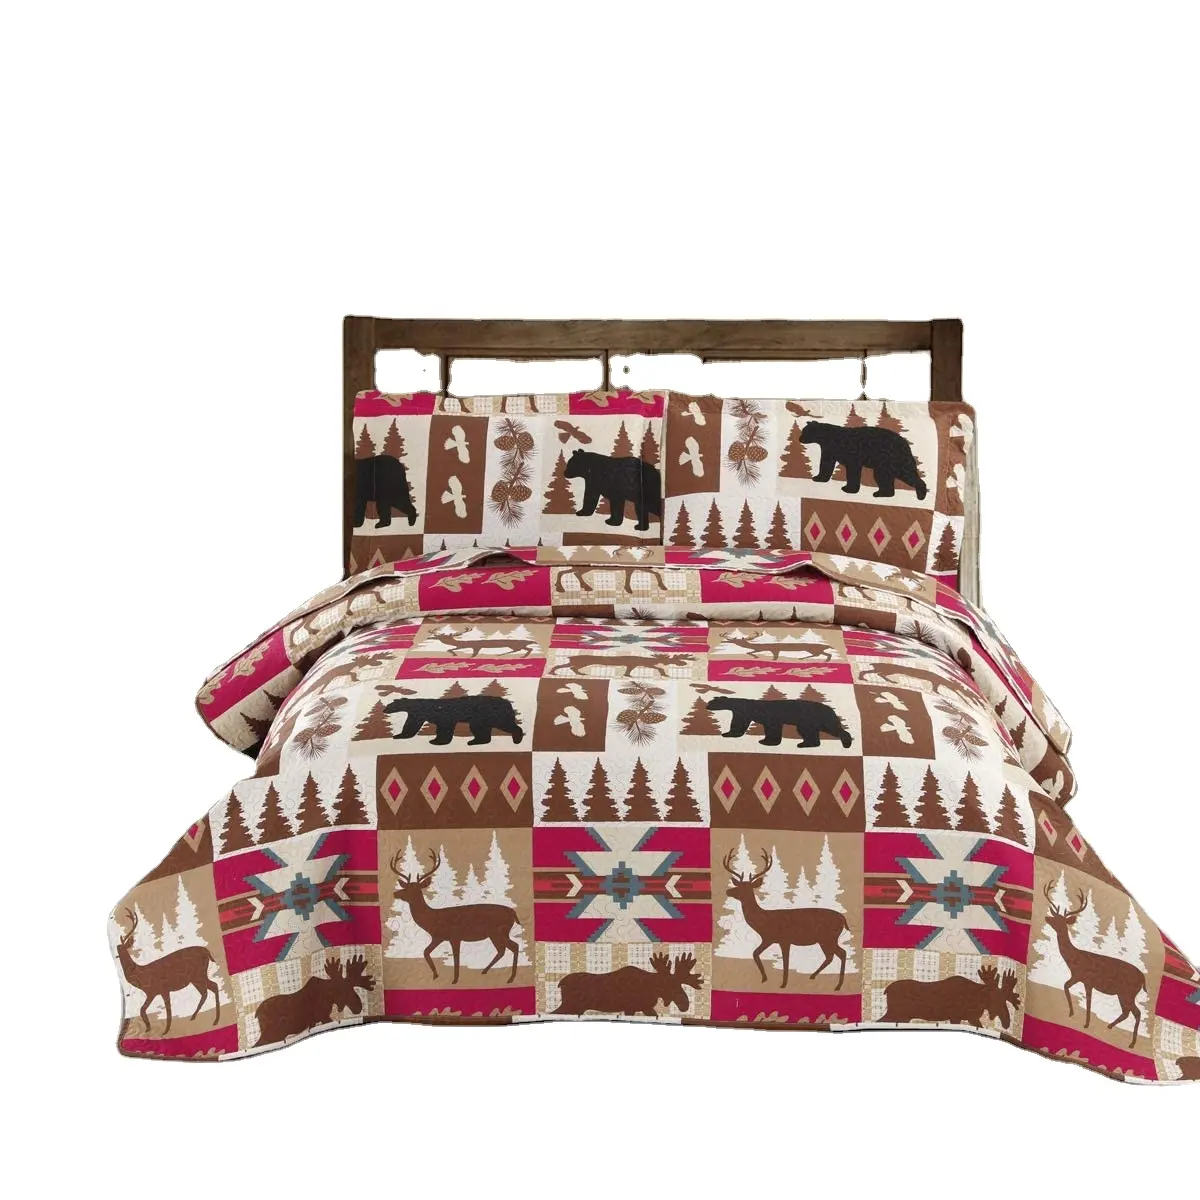 غطاء سرير ريفي لمقصورة, غطاء سرير بغطاء قابل للارتجاج على شكل غزال للحياة البرية ، طقم لحاف منقوش باللون الأسود ، ديكور بلد الدب